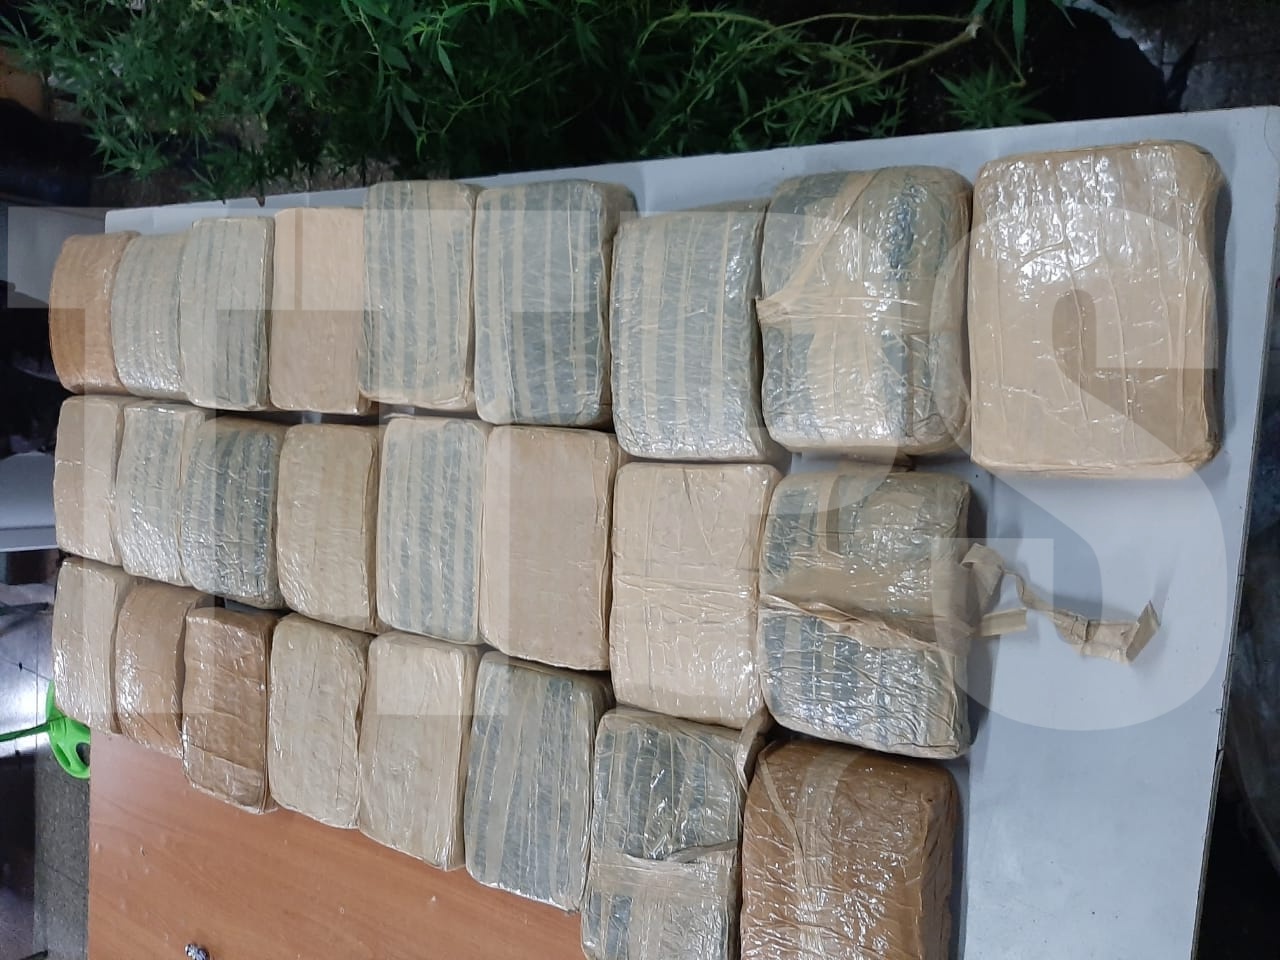 SORT seize 96.8 kilos marijuana in Moruga bushes